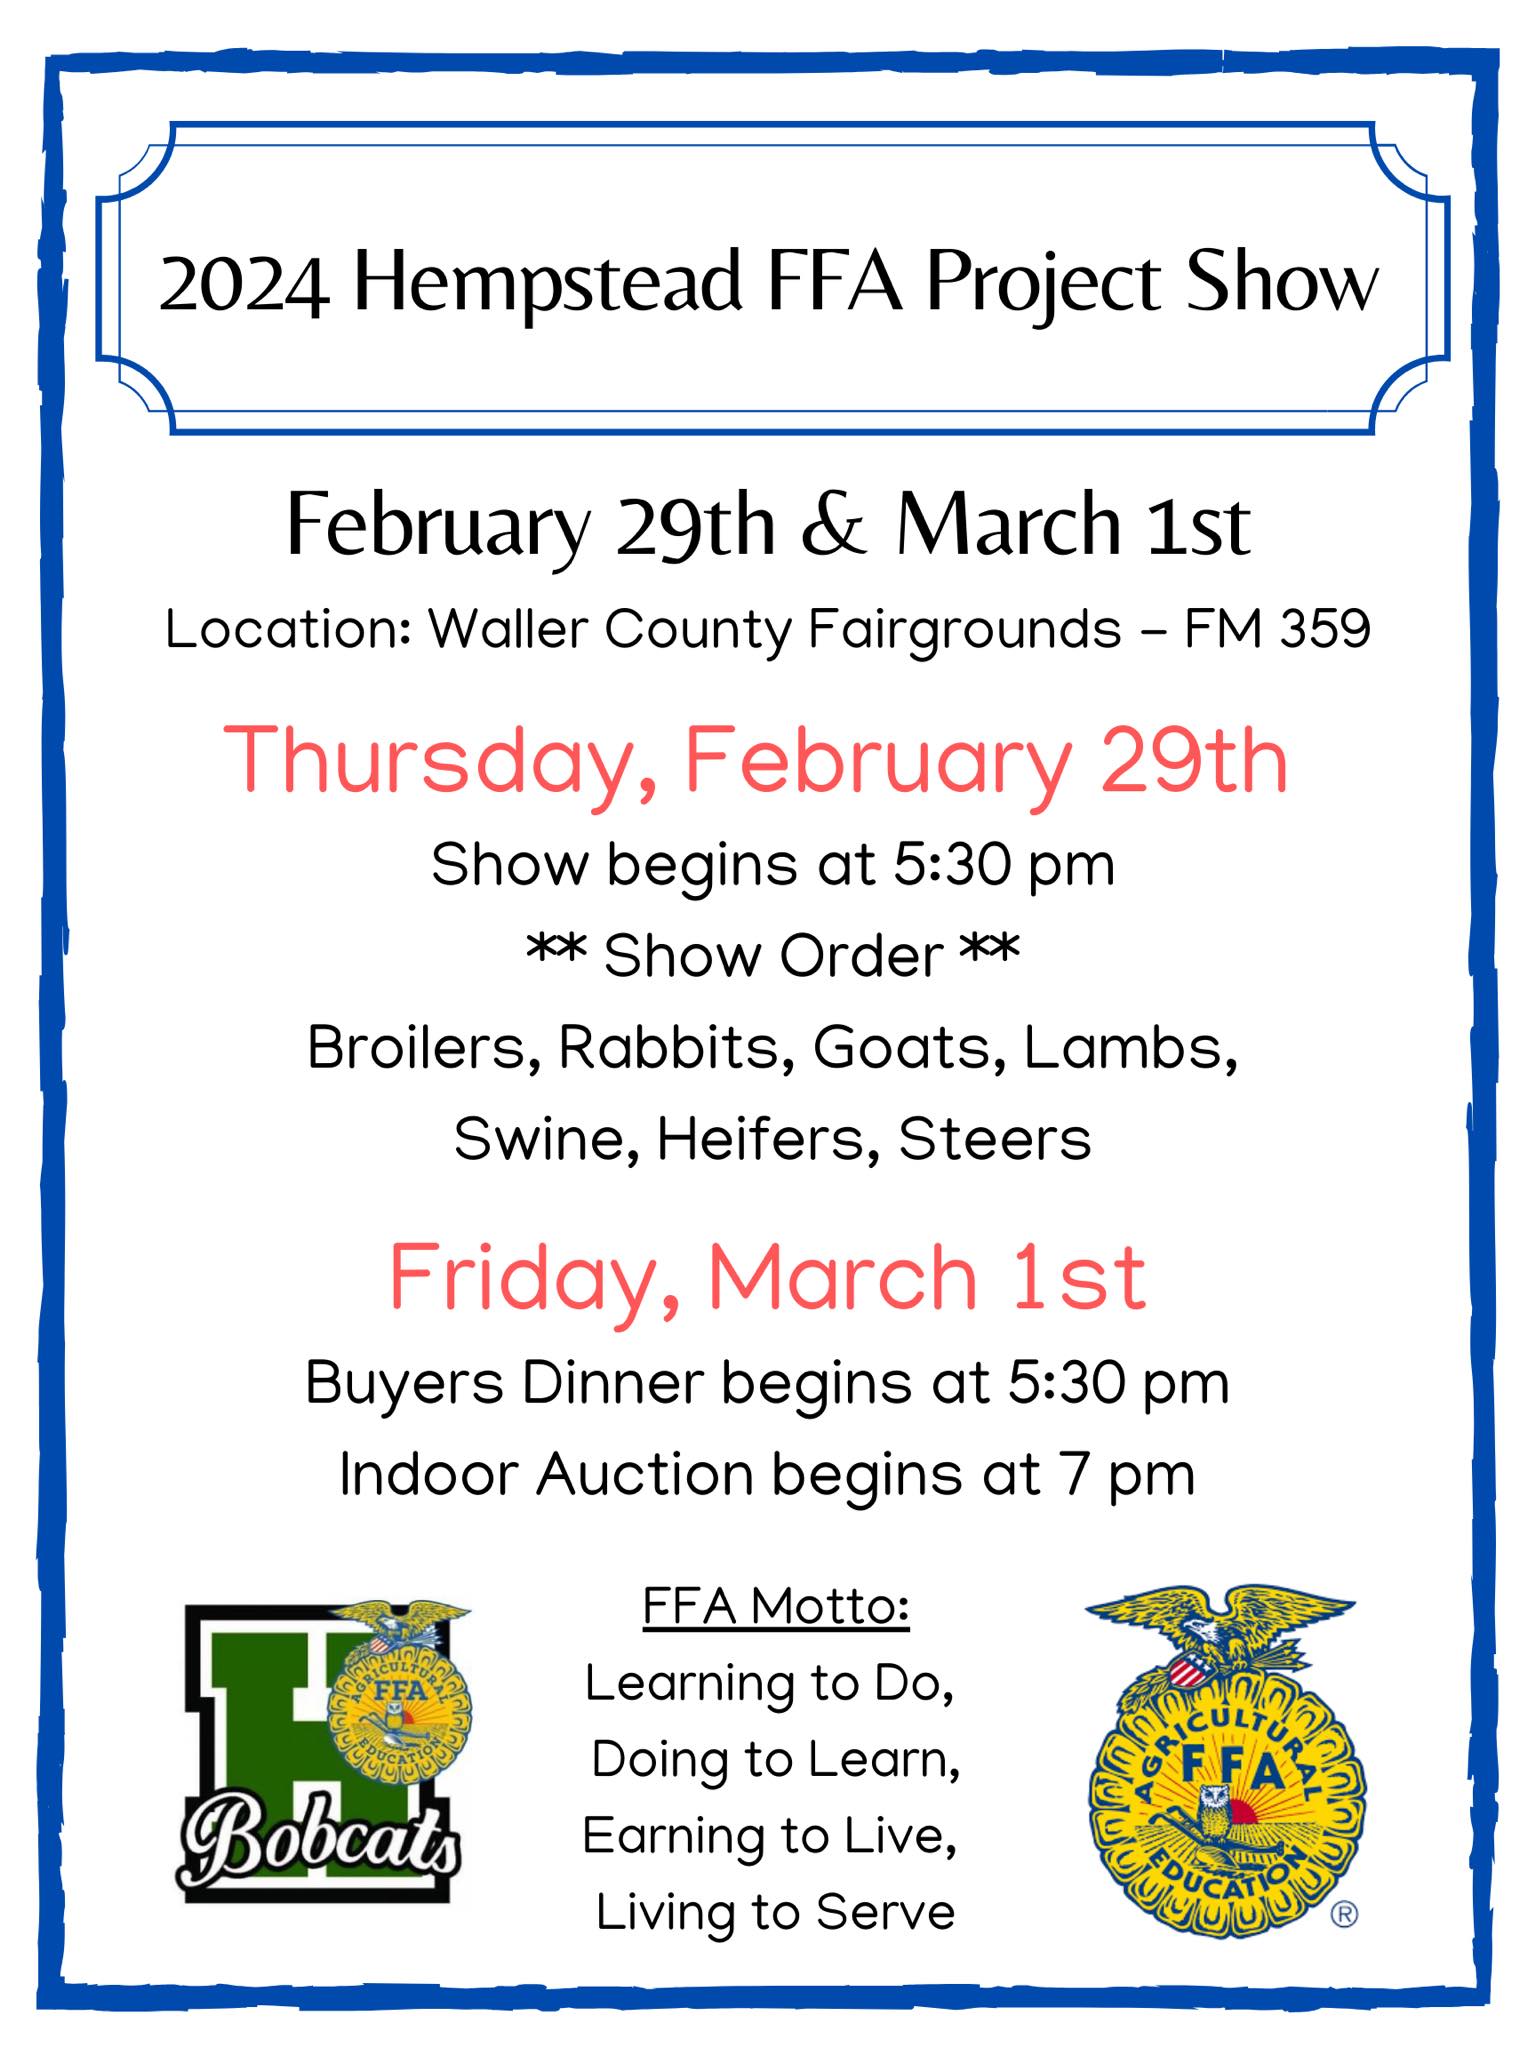 Hempstead FFA Project Show